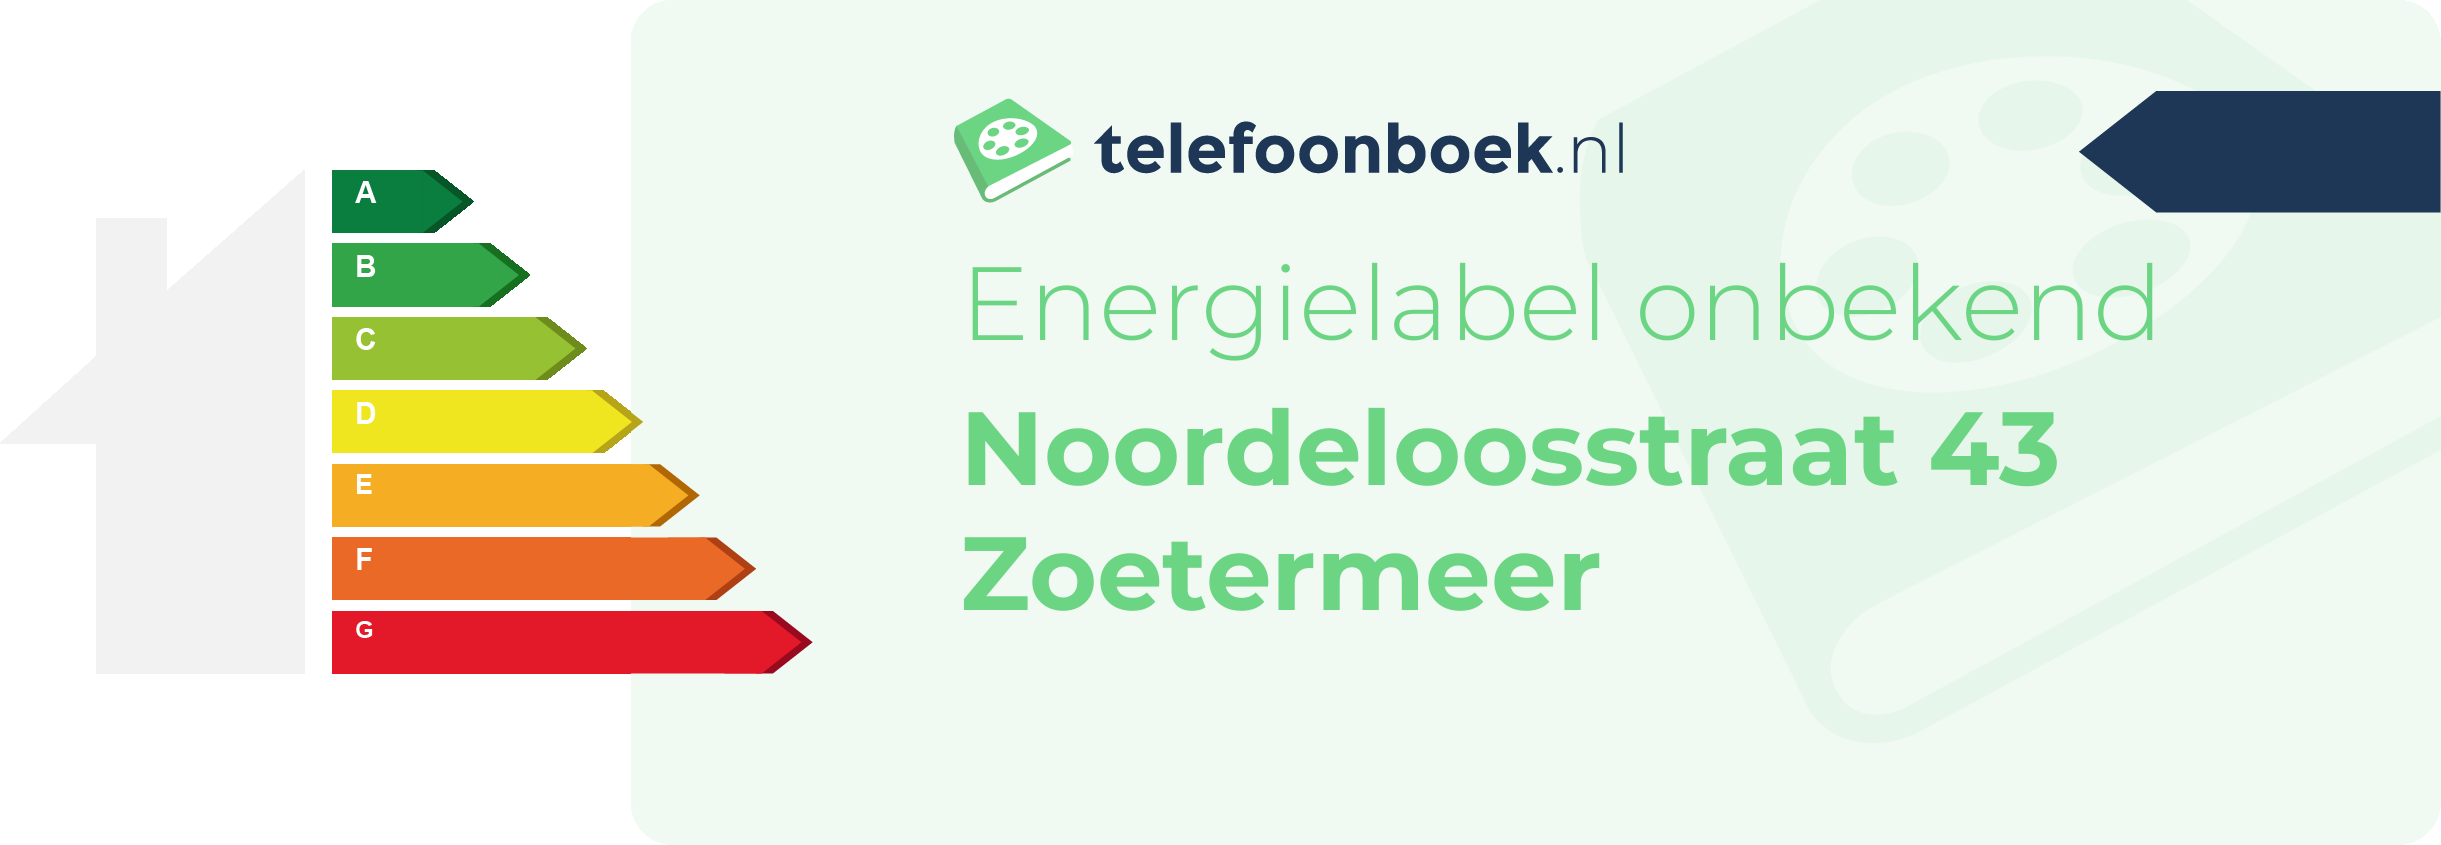 Energielabel Noordeloosstraat 43 Zoetermeer